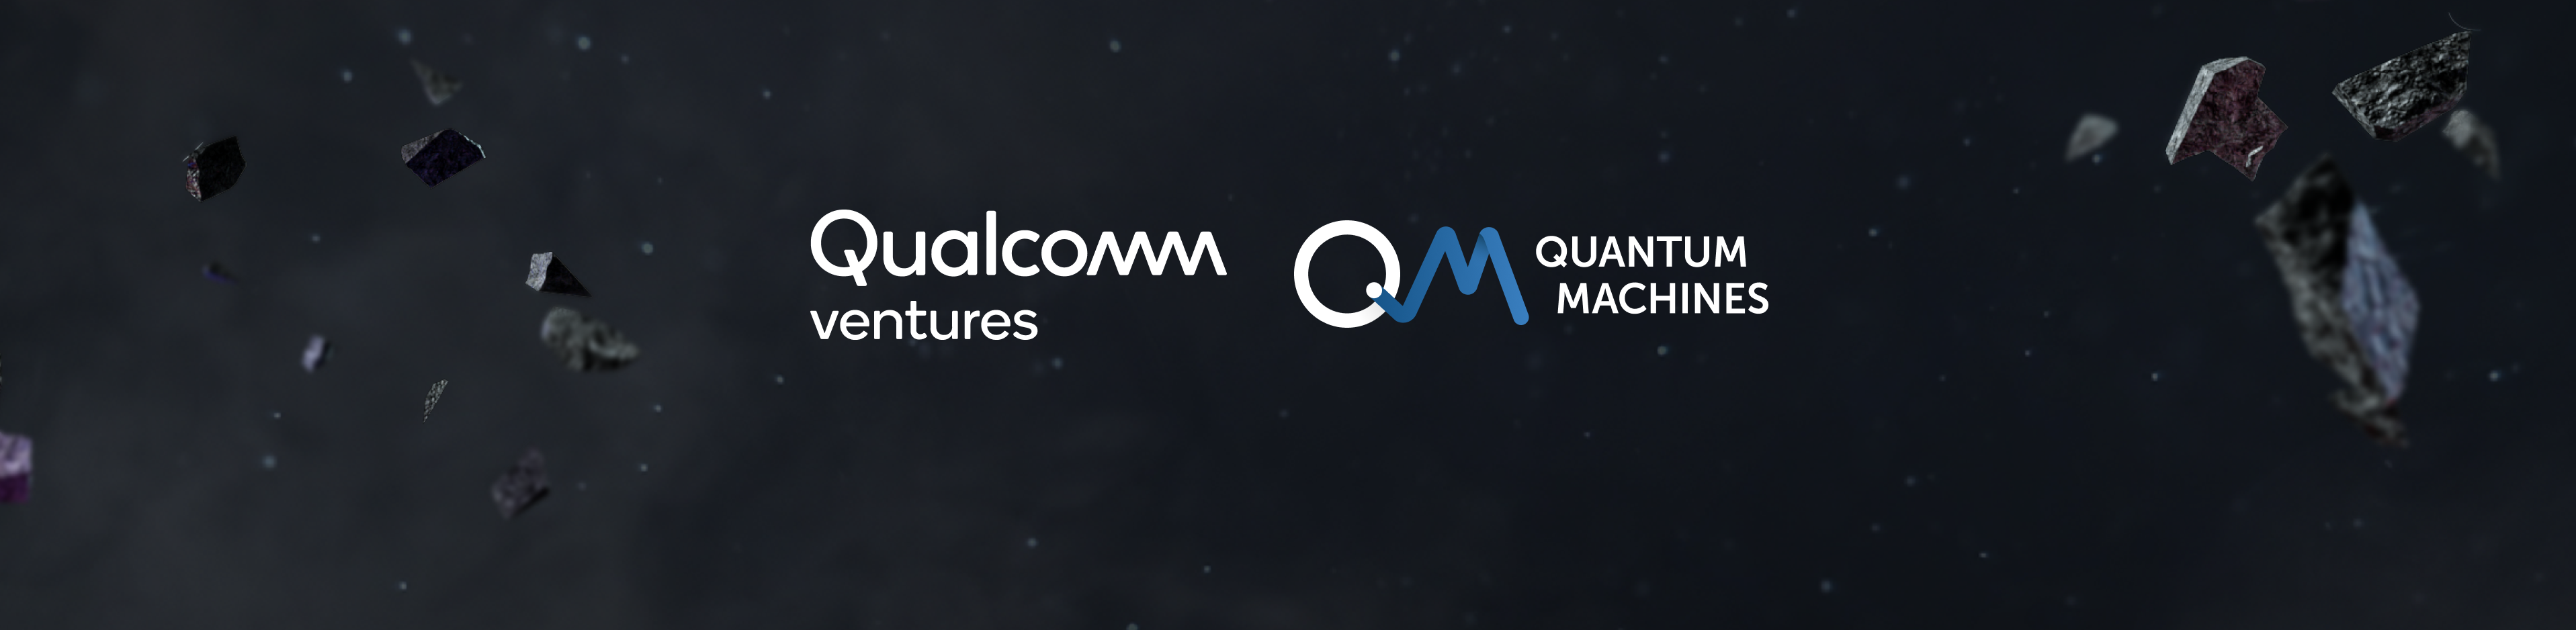 Quantum Machines add Qualcomm Ventures to investor list